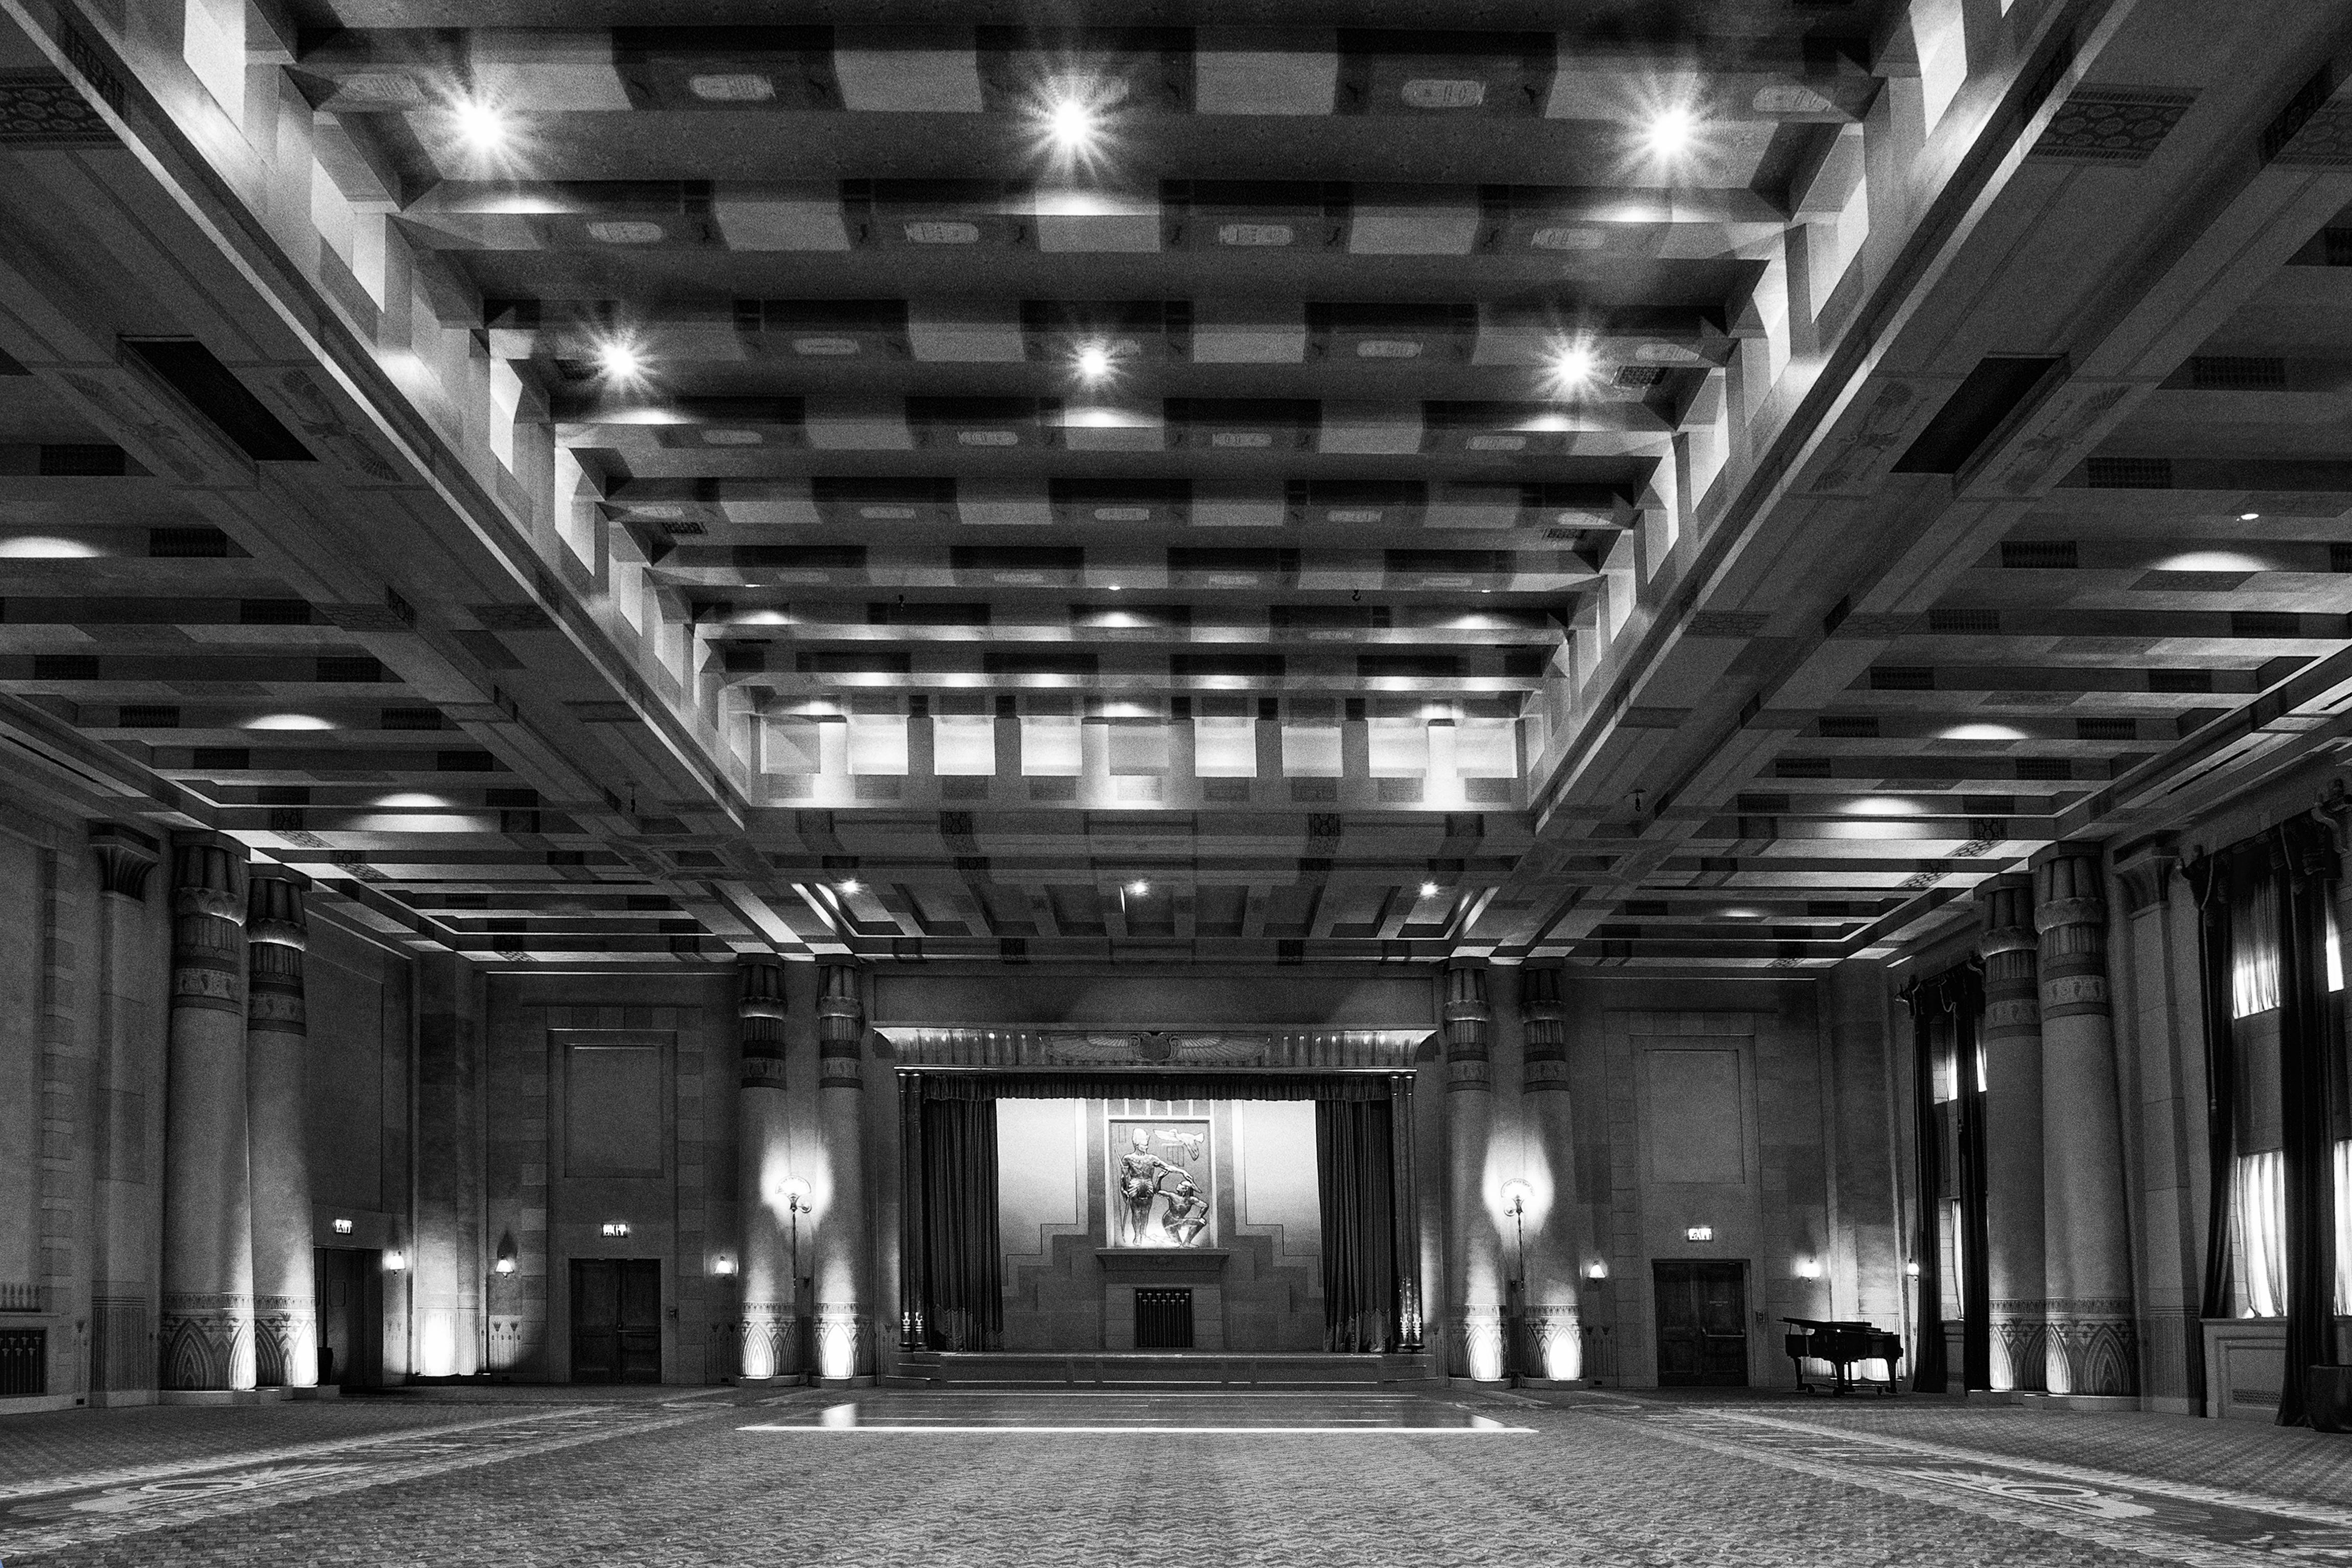 Myrtie Cope Black and White Photograph – ""Fox Theatre, ägyptisches Ballzimmer"" - Architekturfotografie - Ezra Stoller